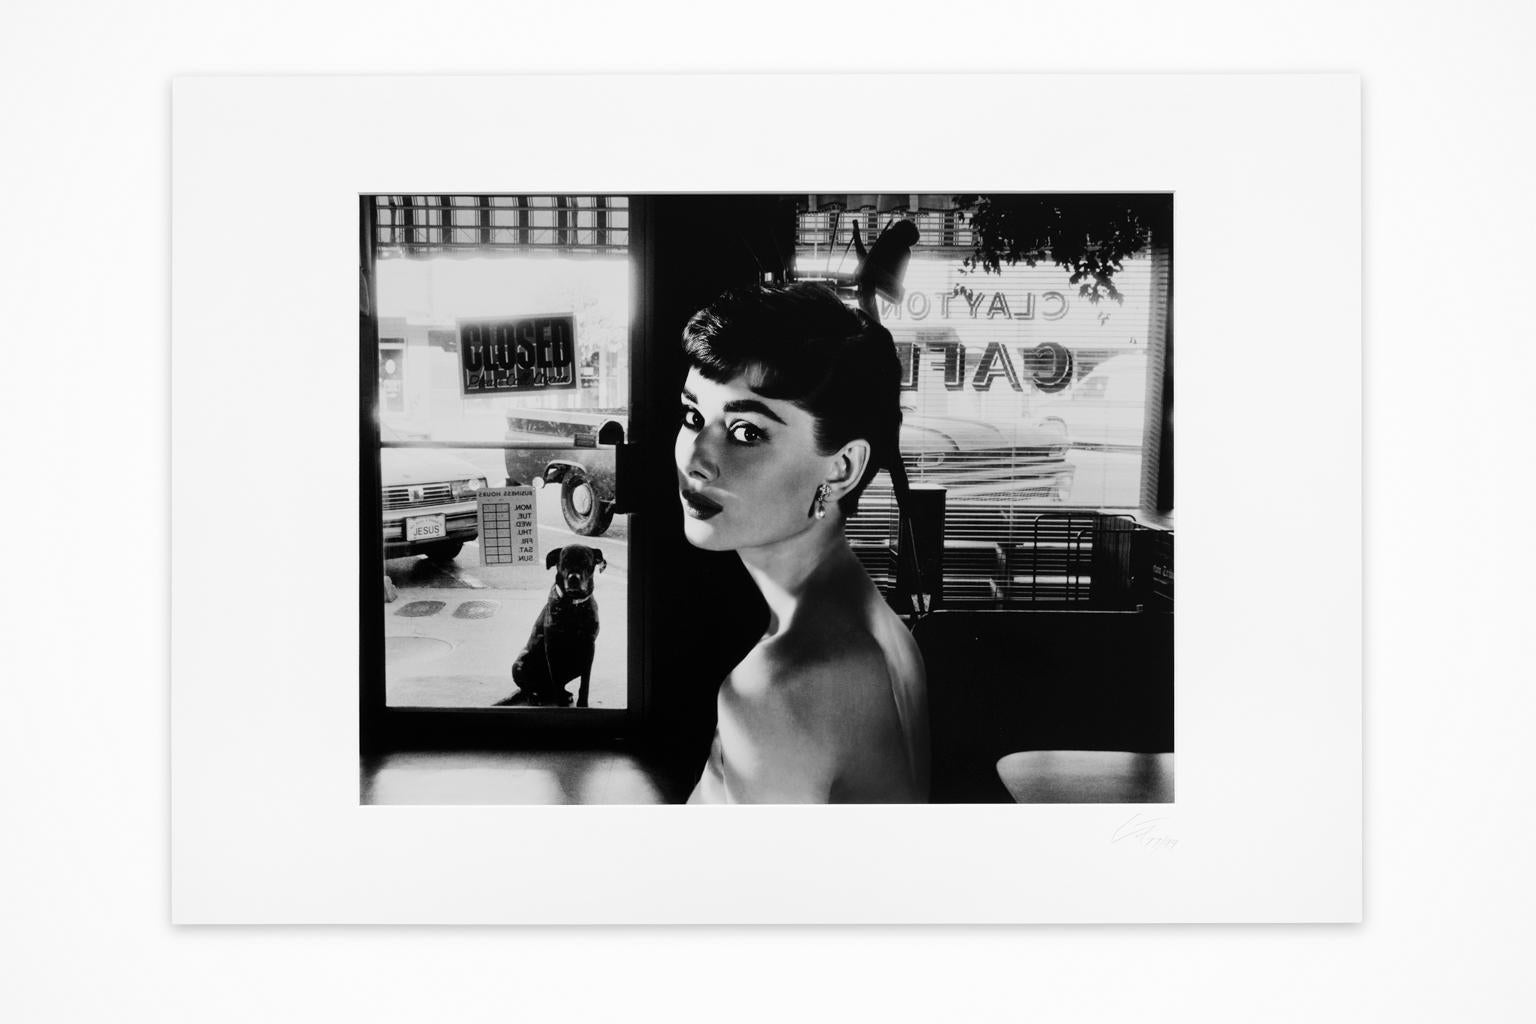 VENTE UNE SEMAINE SEULEMENT

"Fragilité adorée", un tirage de photocollage sur papier photographique d'Axel Crieger (1955 - )  d'une photo publicitaire d'Audrey Hepburn pour "Sabrina" placée dans un café. Elle est montée sur les bords supérieurs de